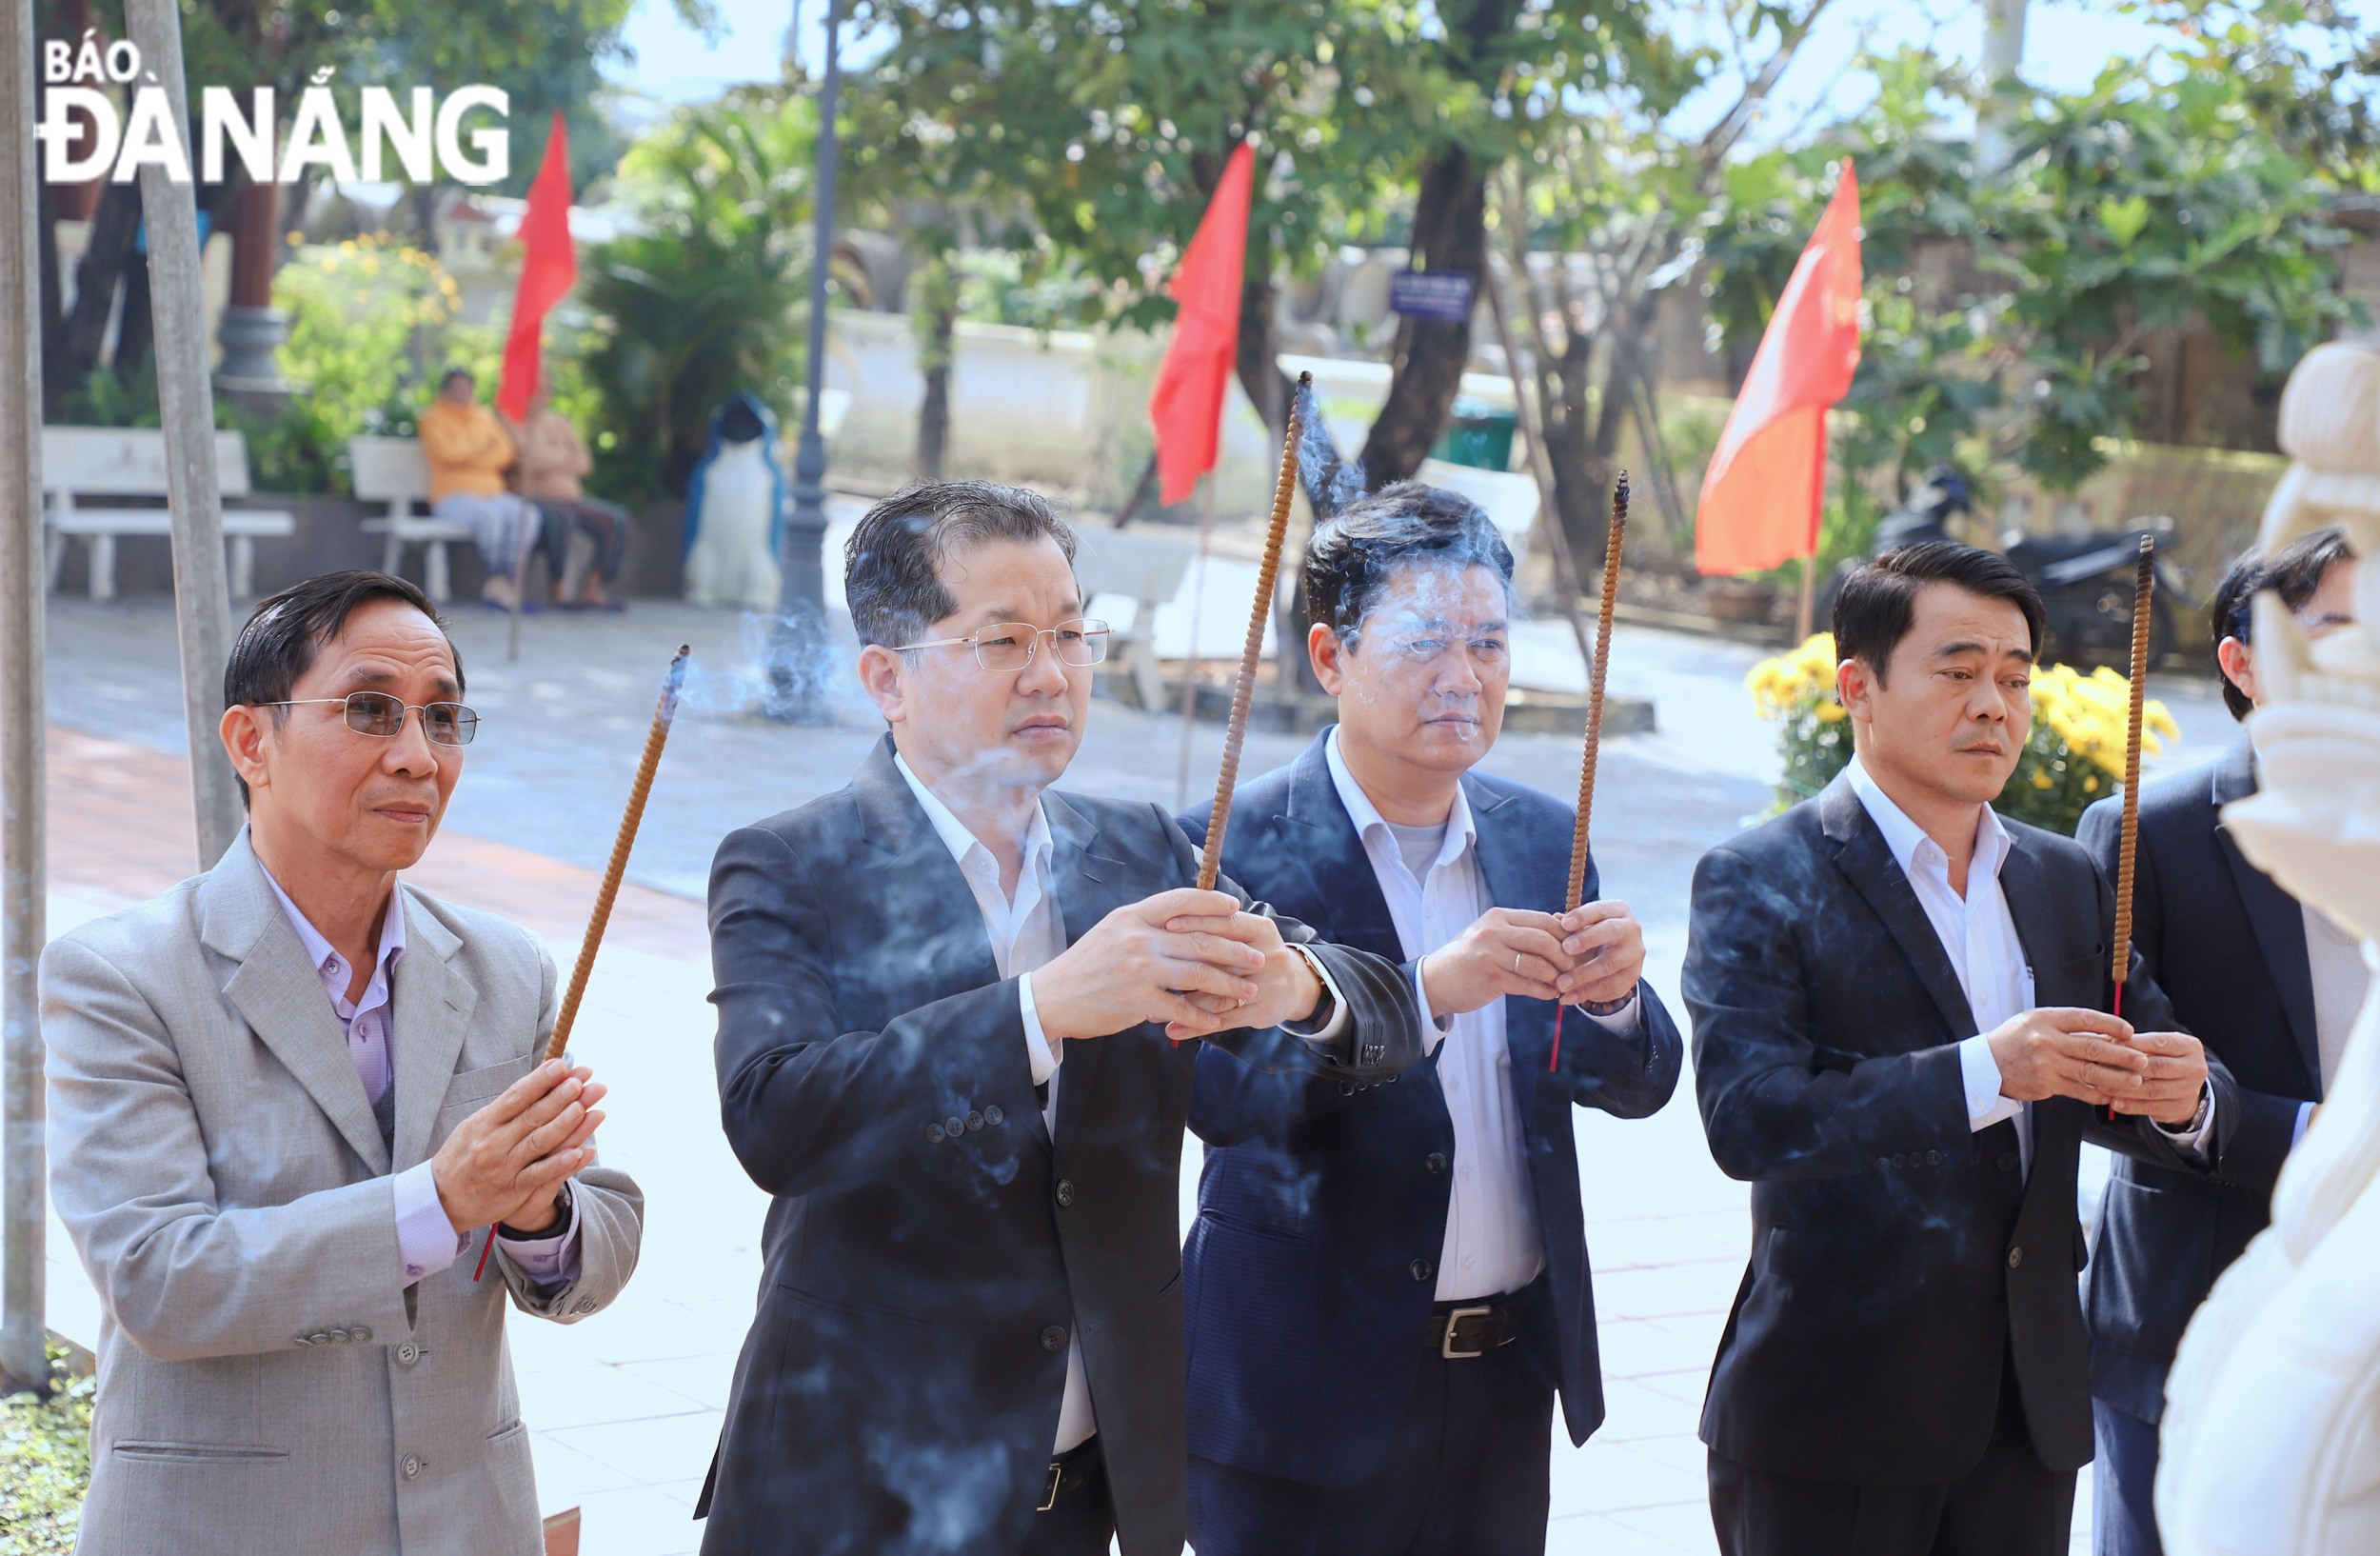 Bí thư Thành ủy Nguyễn Văn Quảng (thứ 2, từ trái sang) cùng lãnh đạo quận Liên Chiểu Khu căn cứ cách mạng B1 Hồng Phước (quận Liên Chiểu). Ảnh: NGỌC PHÚ